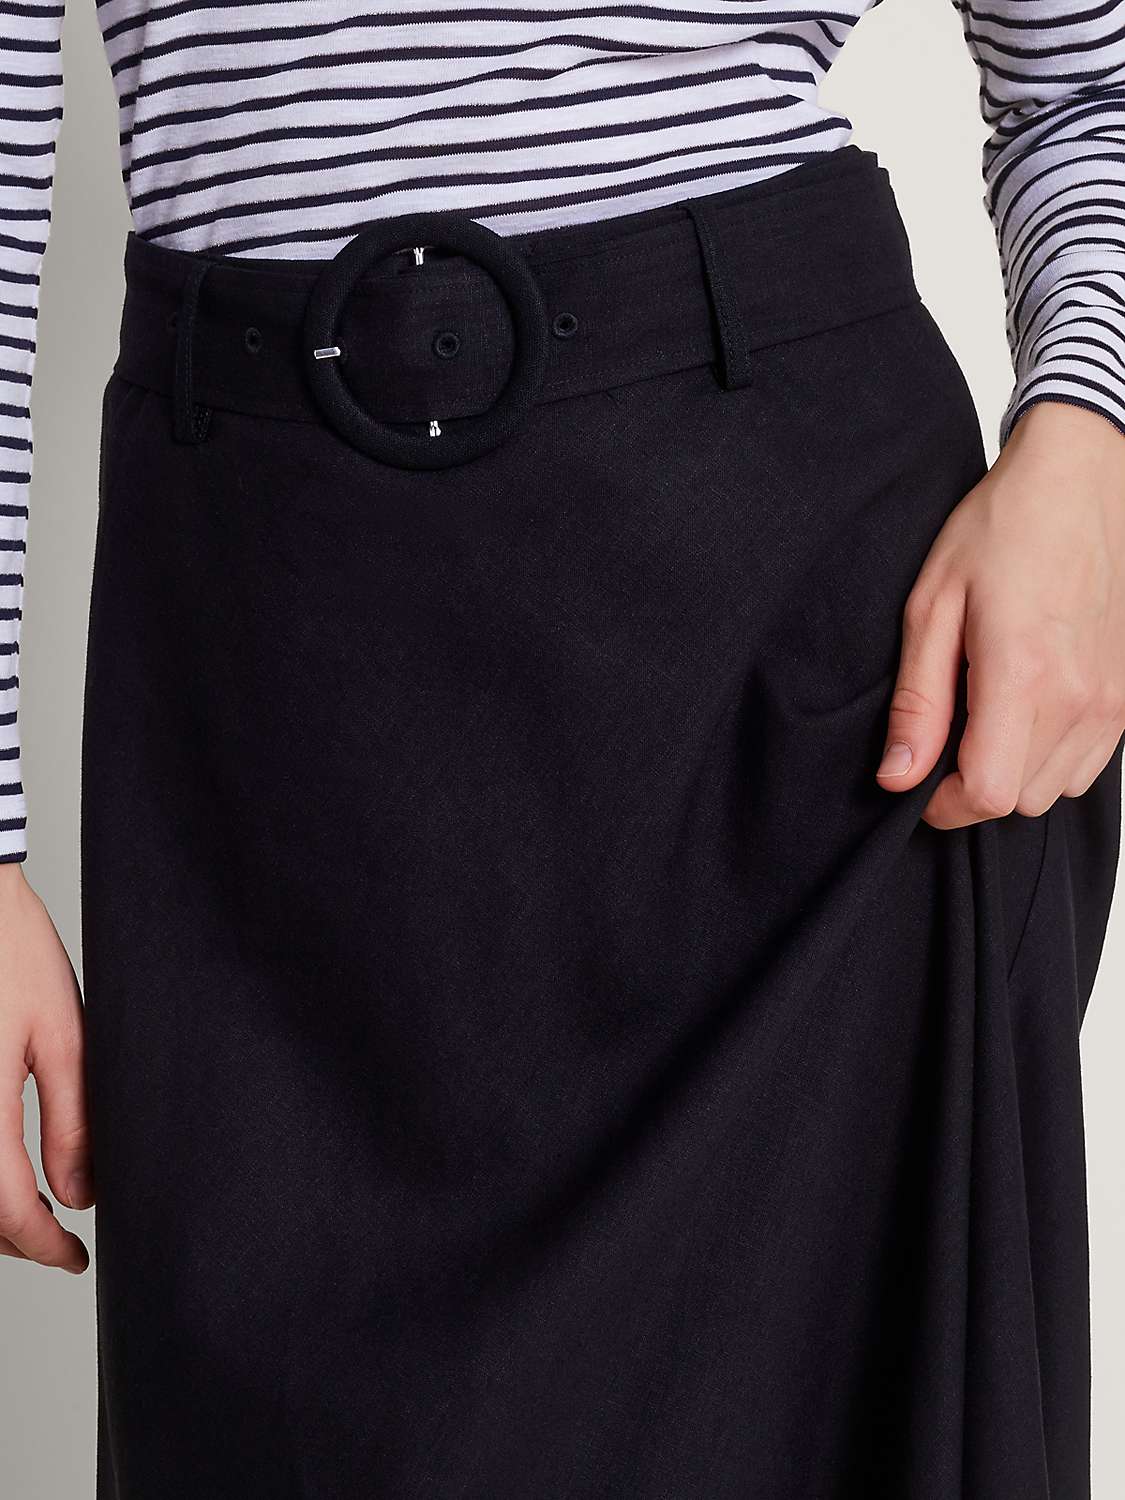 Buy Monsoon Olive Midi Skirt, Black Online at johnlewis.com